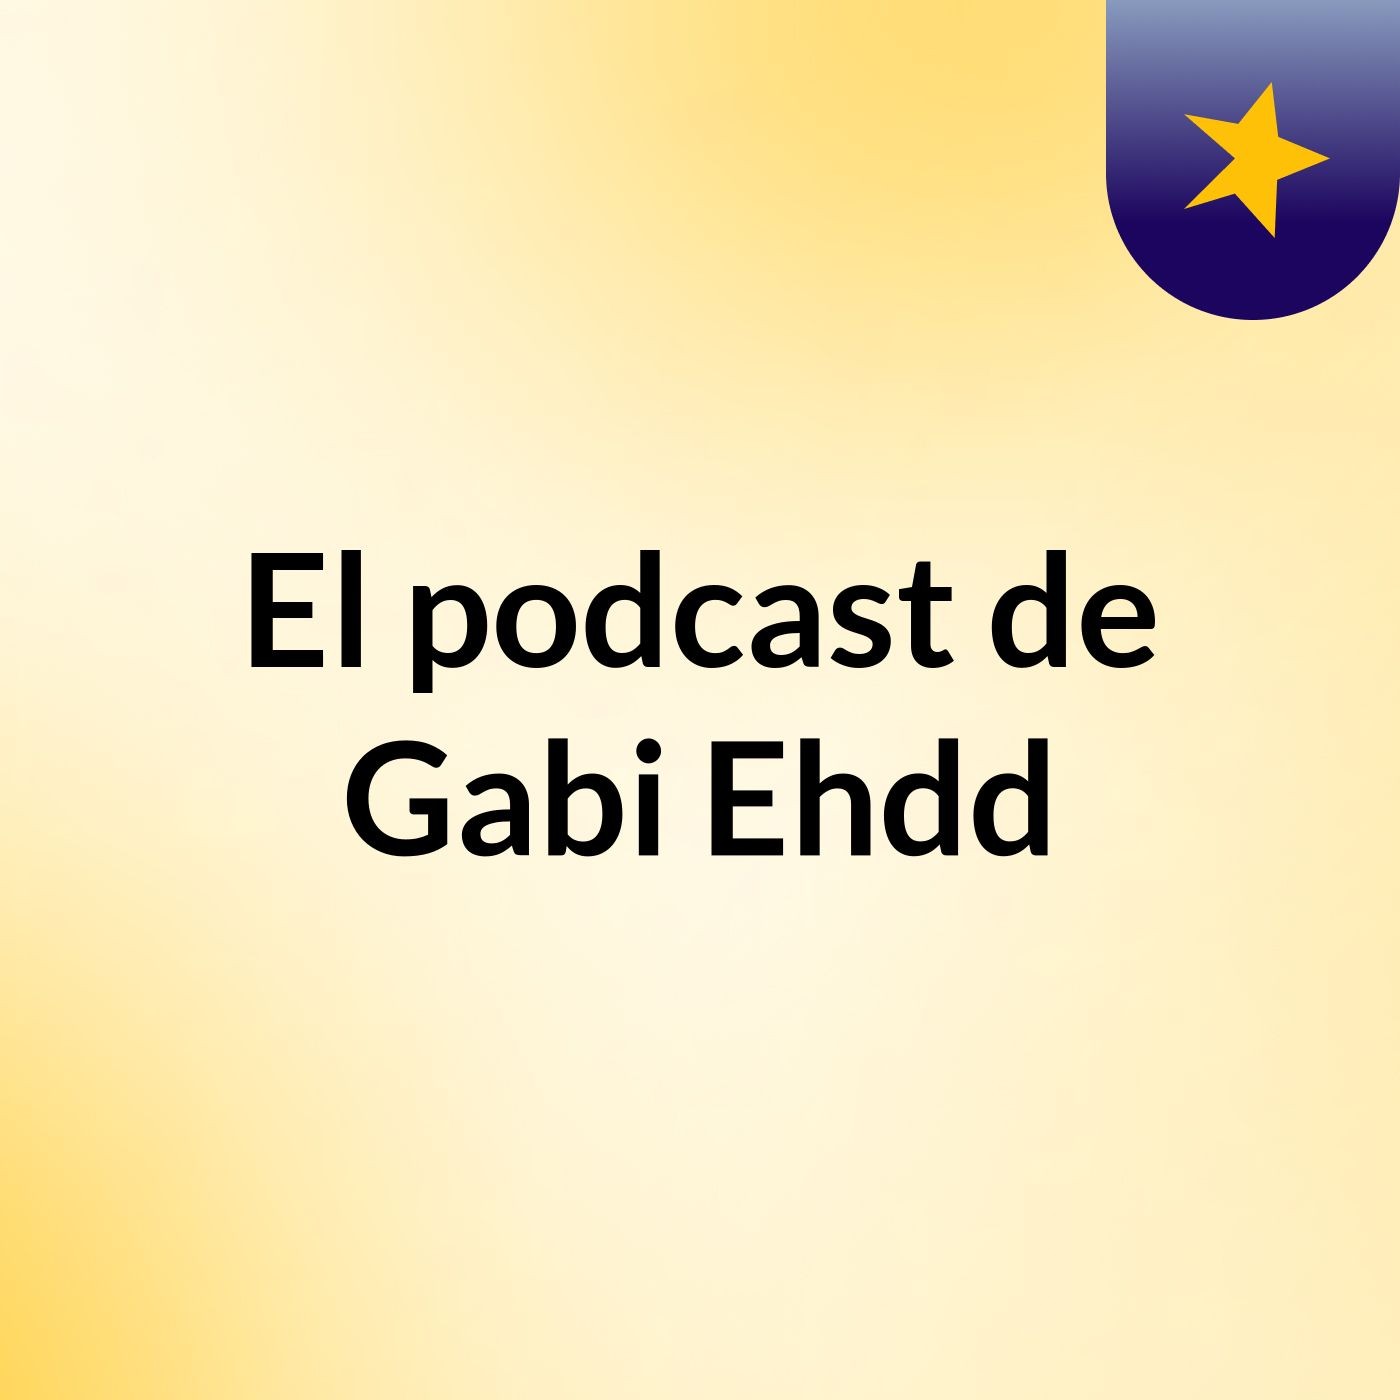 El podcast de Gabi Ehdd